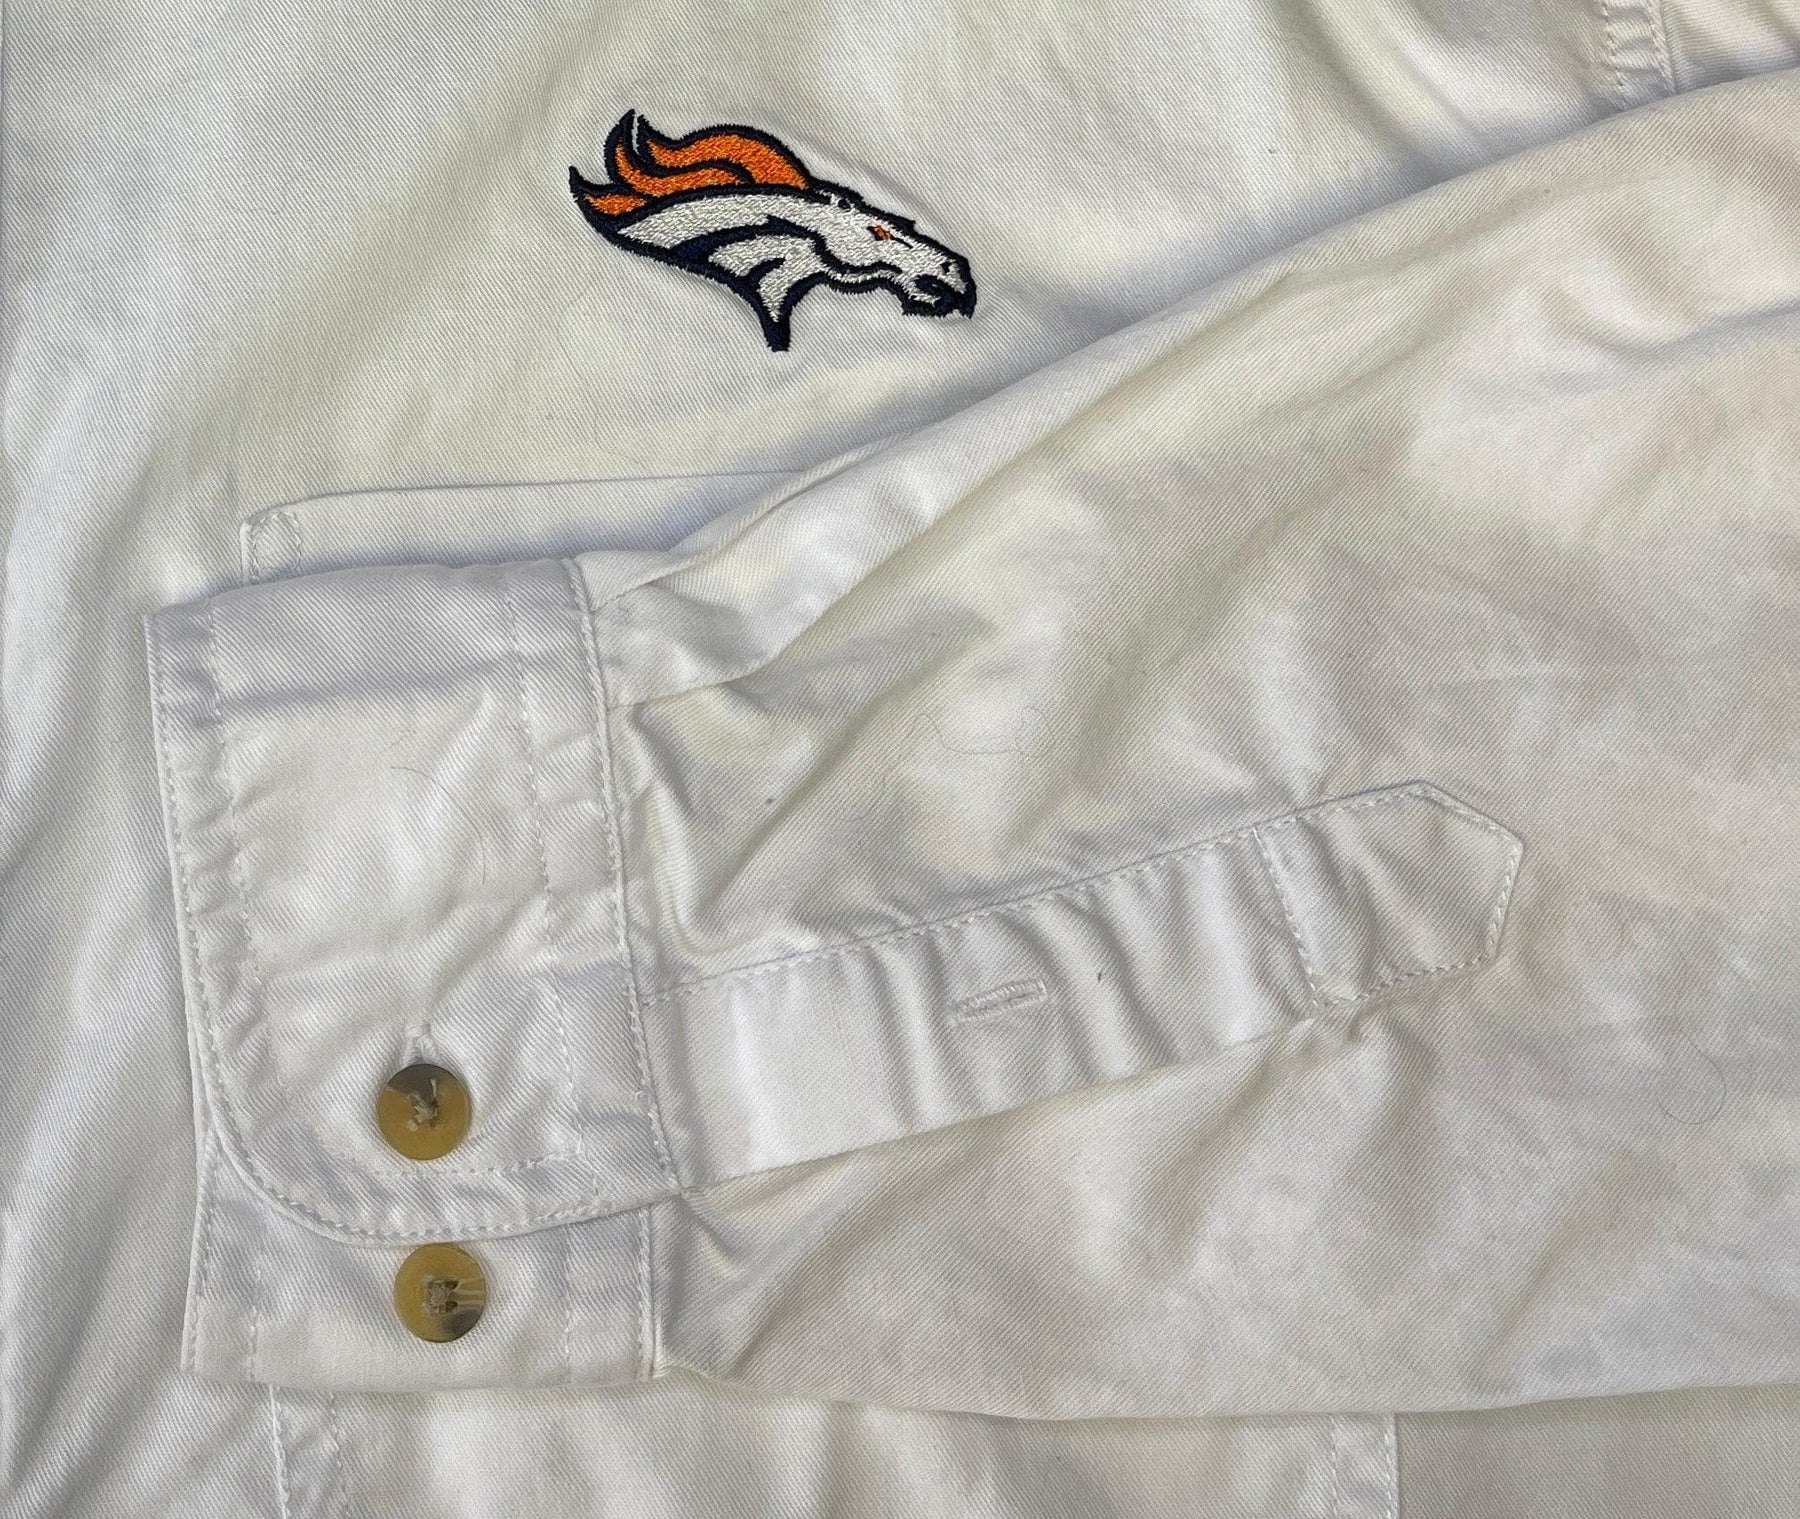 NFL Denver Broncos 100% Cotton White Button-Up Shirt Women's Large